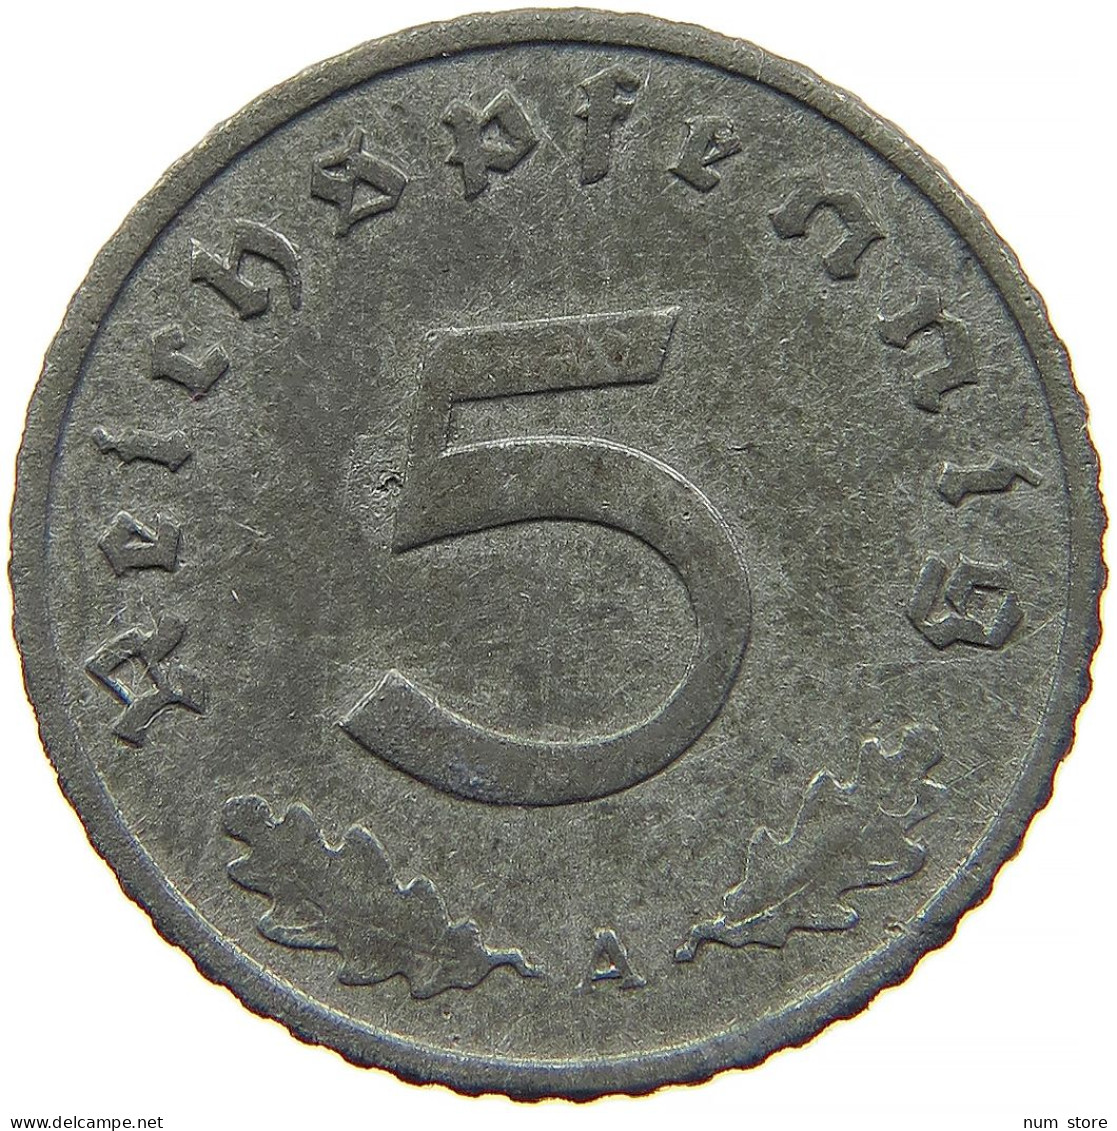 GERMANY 5 REICHSPFENNIG 1942 A #s091 0817 - 5 Reichspfennig